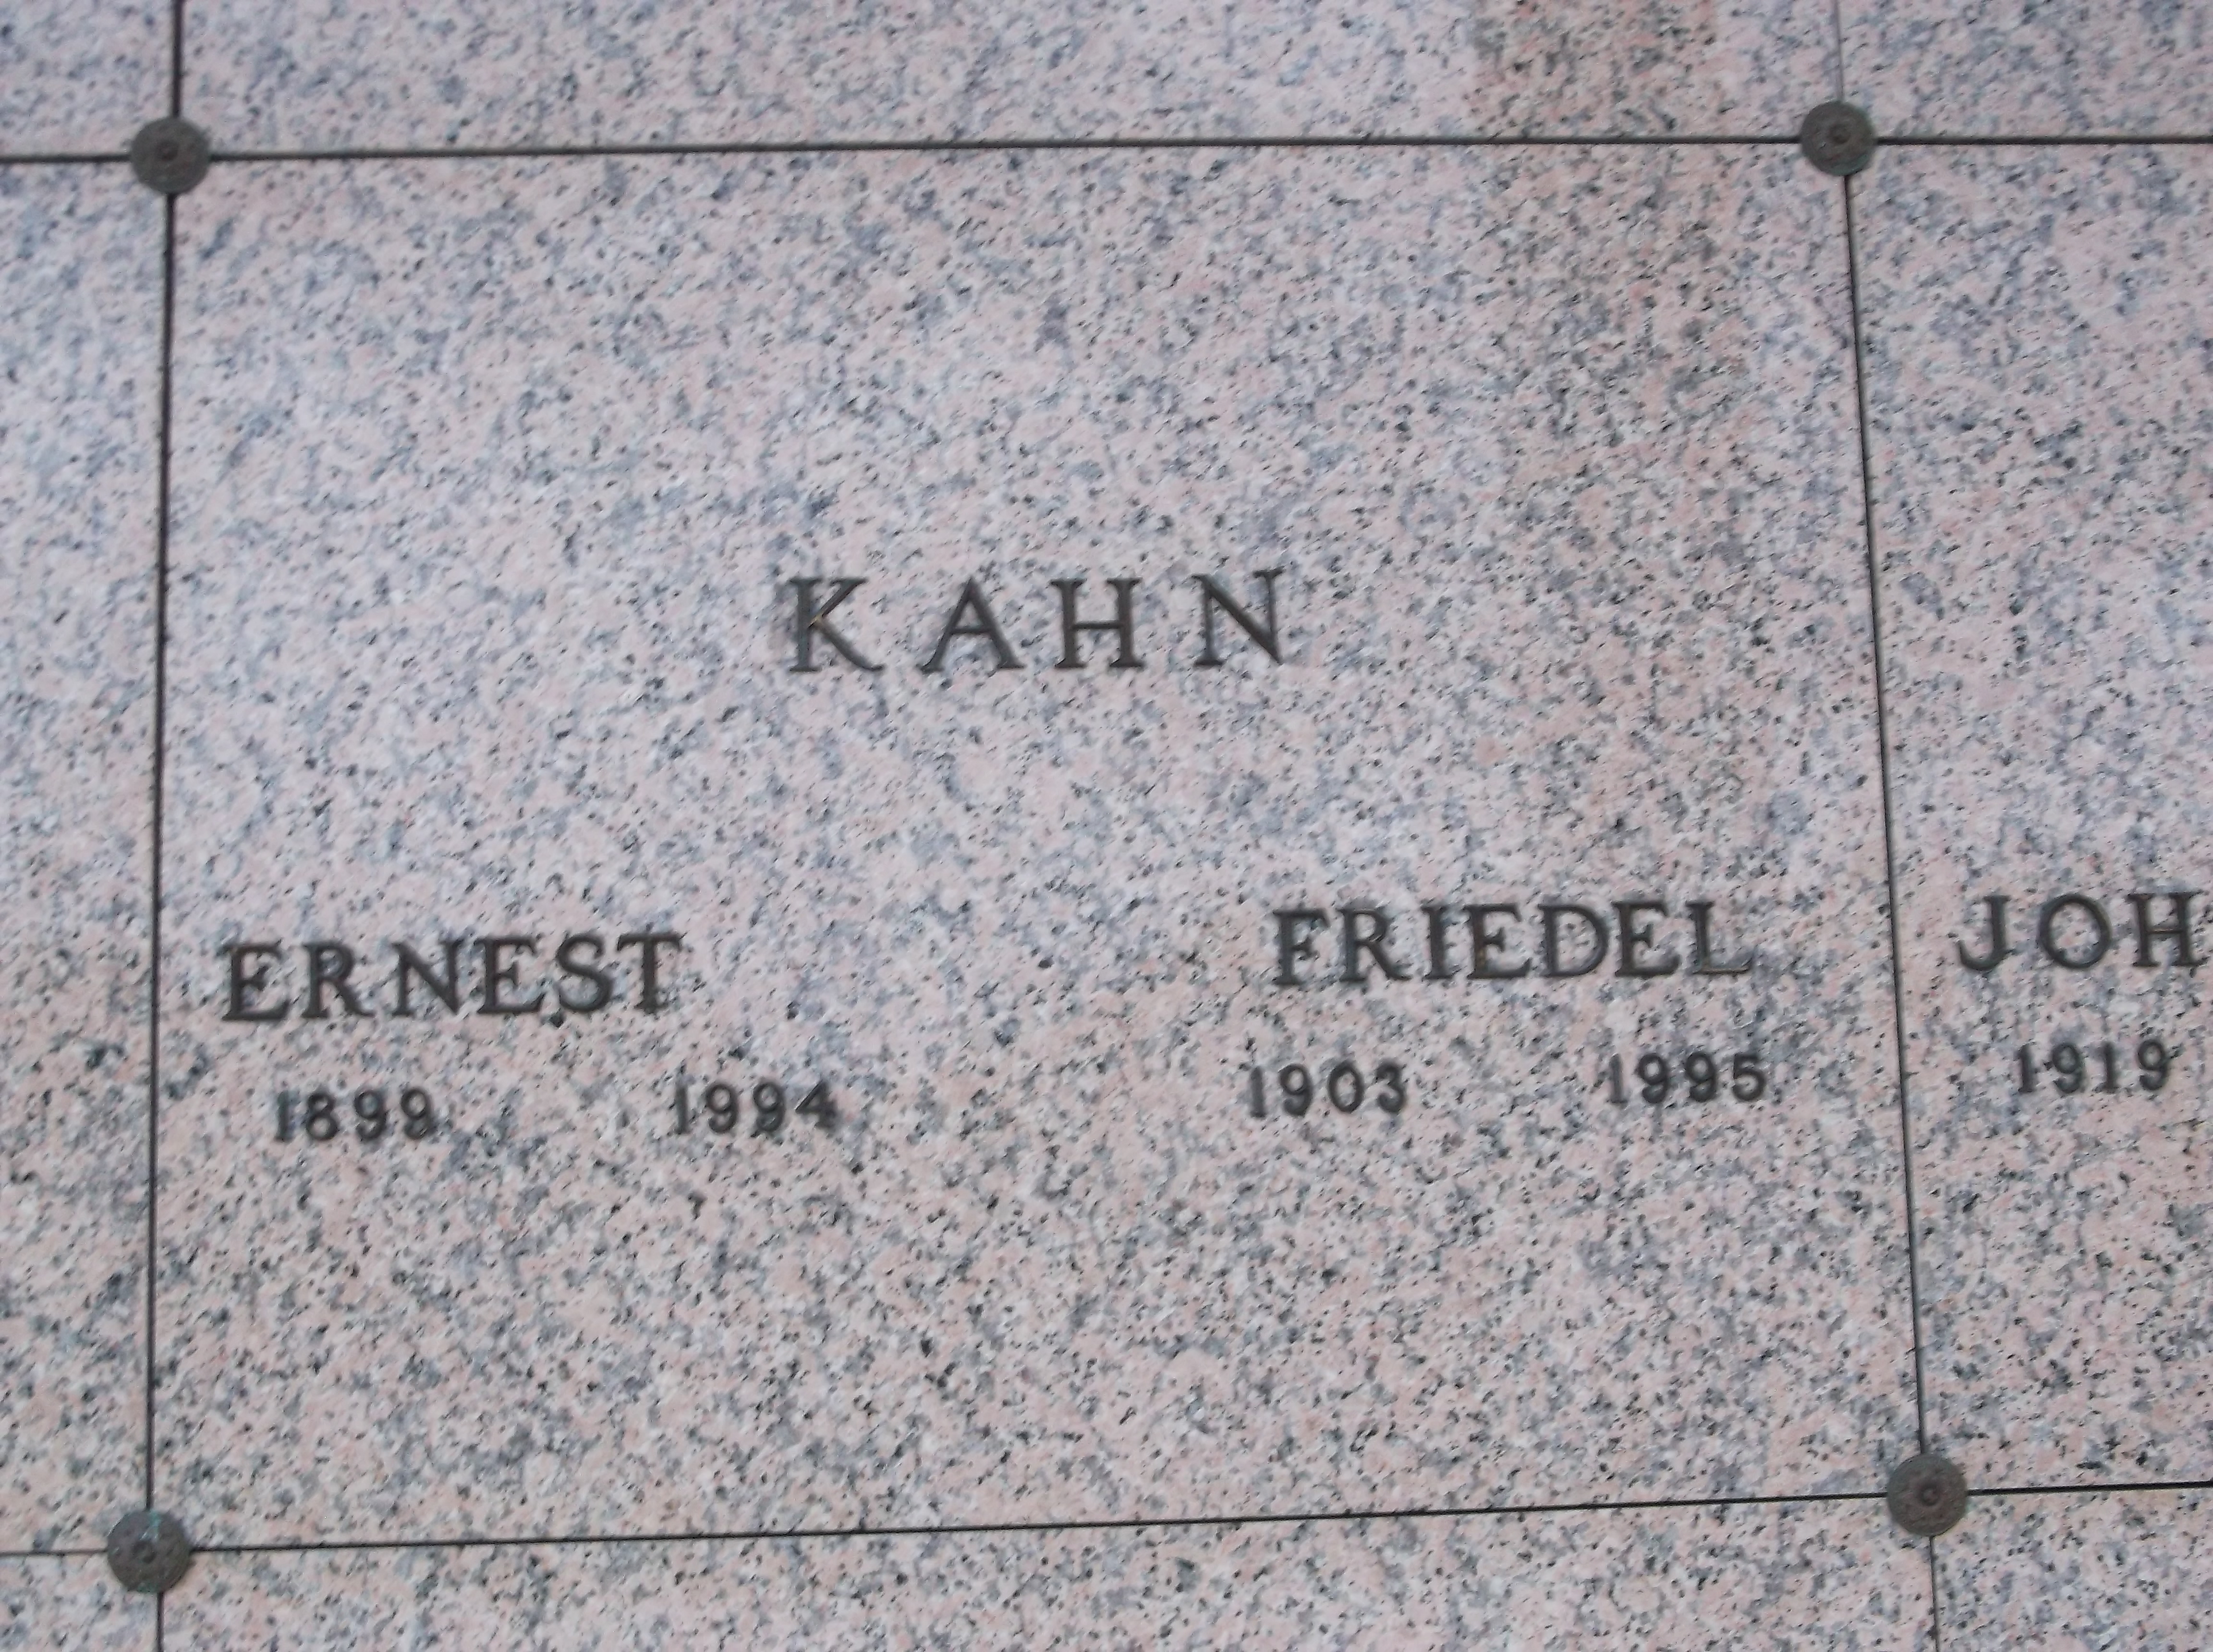 Ernest Kahn